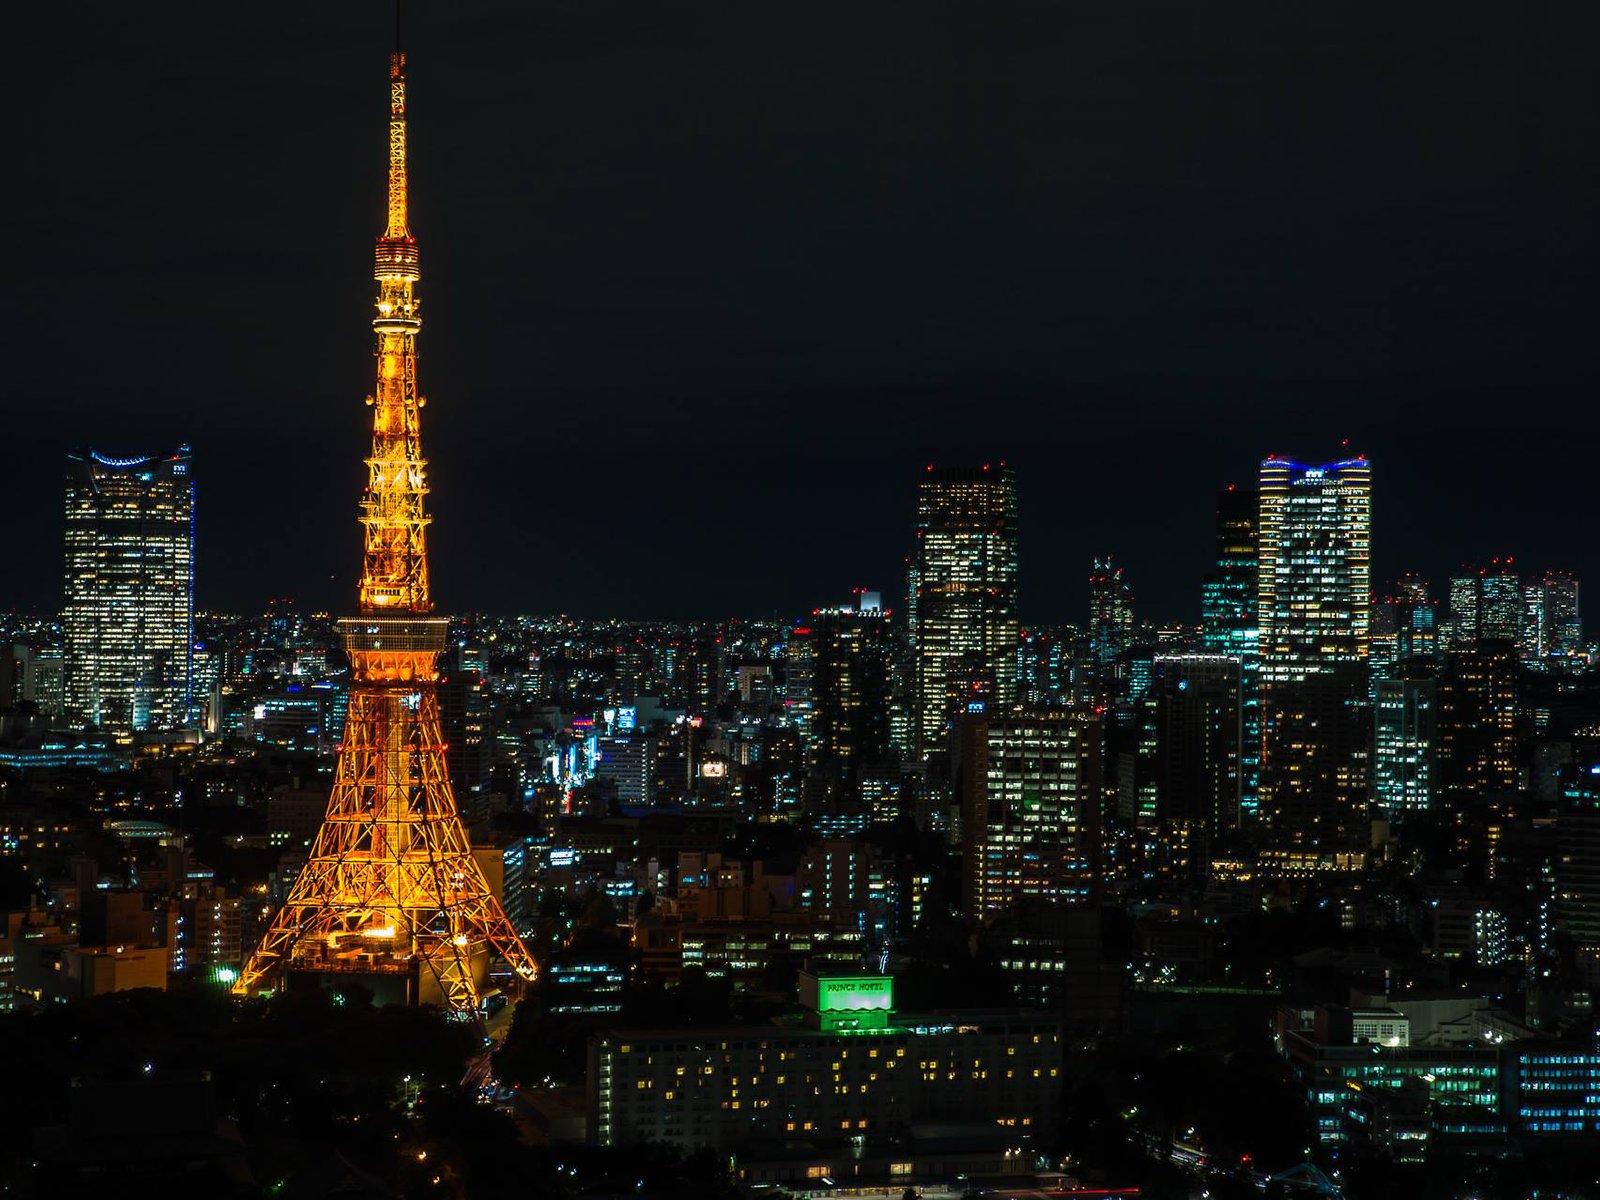 カメラマンさん激推しの東京夜景スポット 世界貿易センタービル展望台 大門 浜松町ついでに Playlife プレイライフ